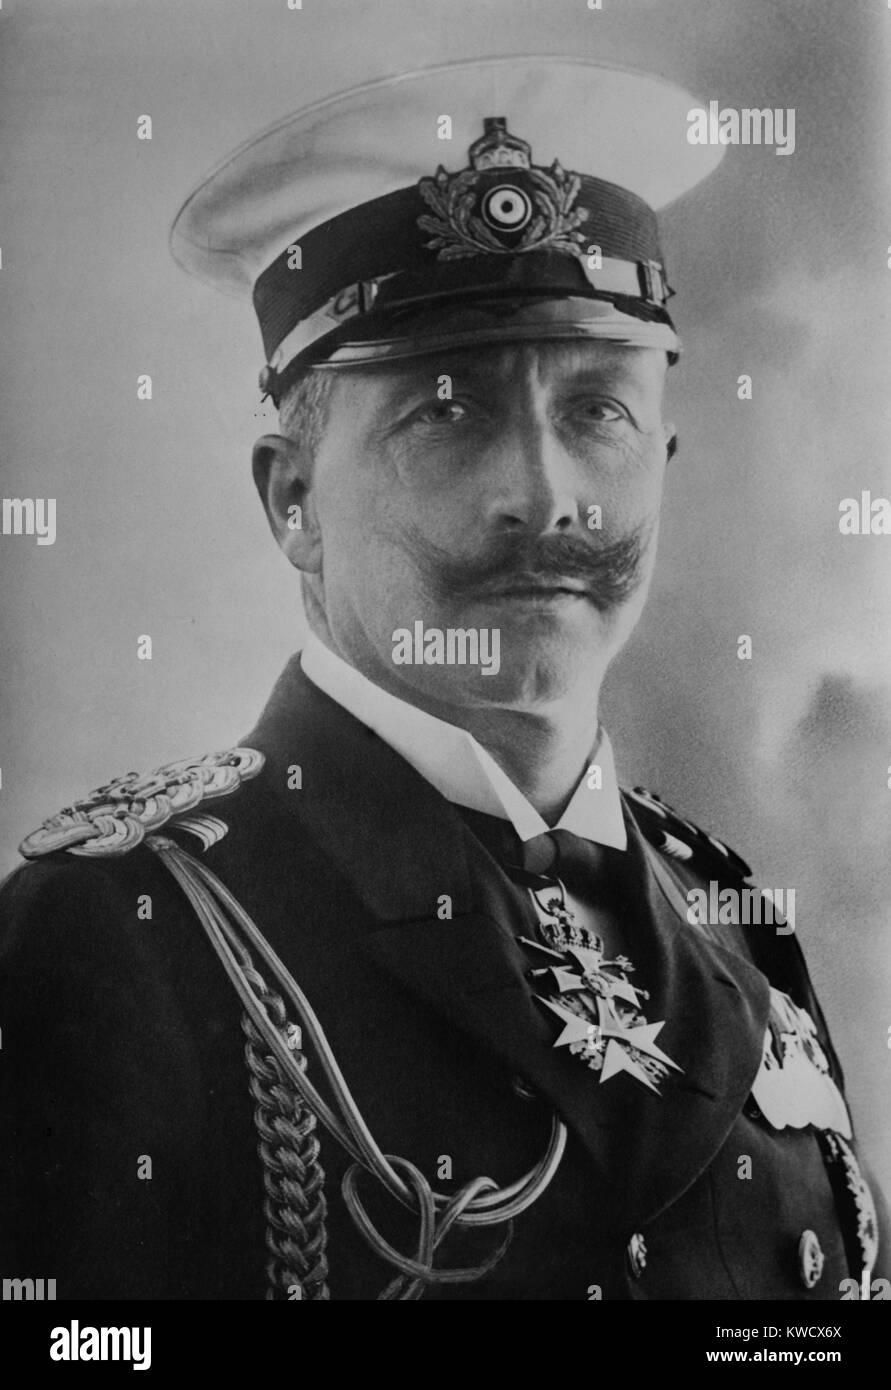 Il Kaiser Guglielmo II di Germania, c. 1900. I suoi ministri hanno partecipato a tedesco la politica interna ma ha dominato le relazioni internazionali con attrito, bellicosity, e l'espansione della marina tedesca (BSLOC 2017 2 41) Foto Stock